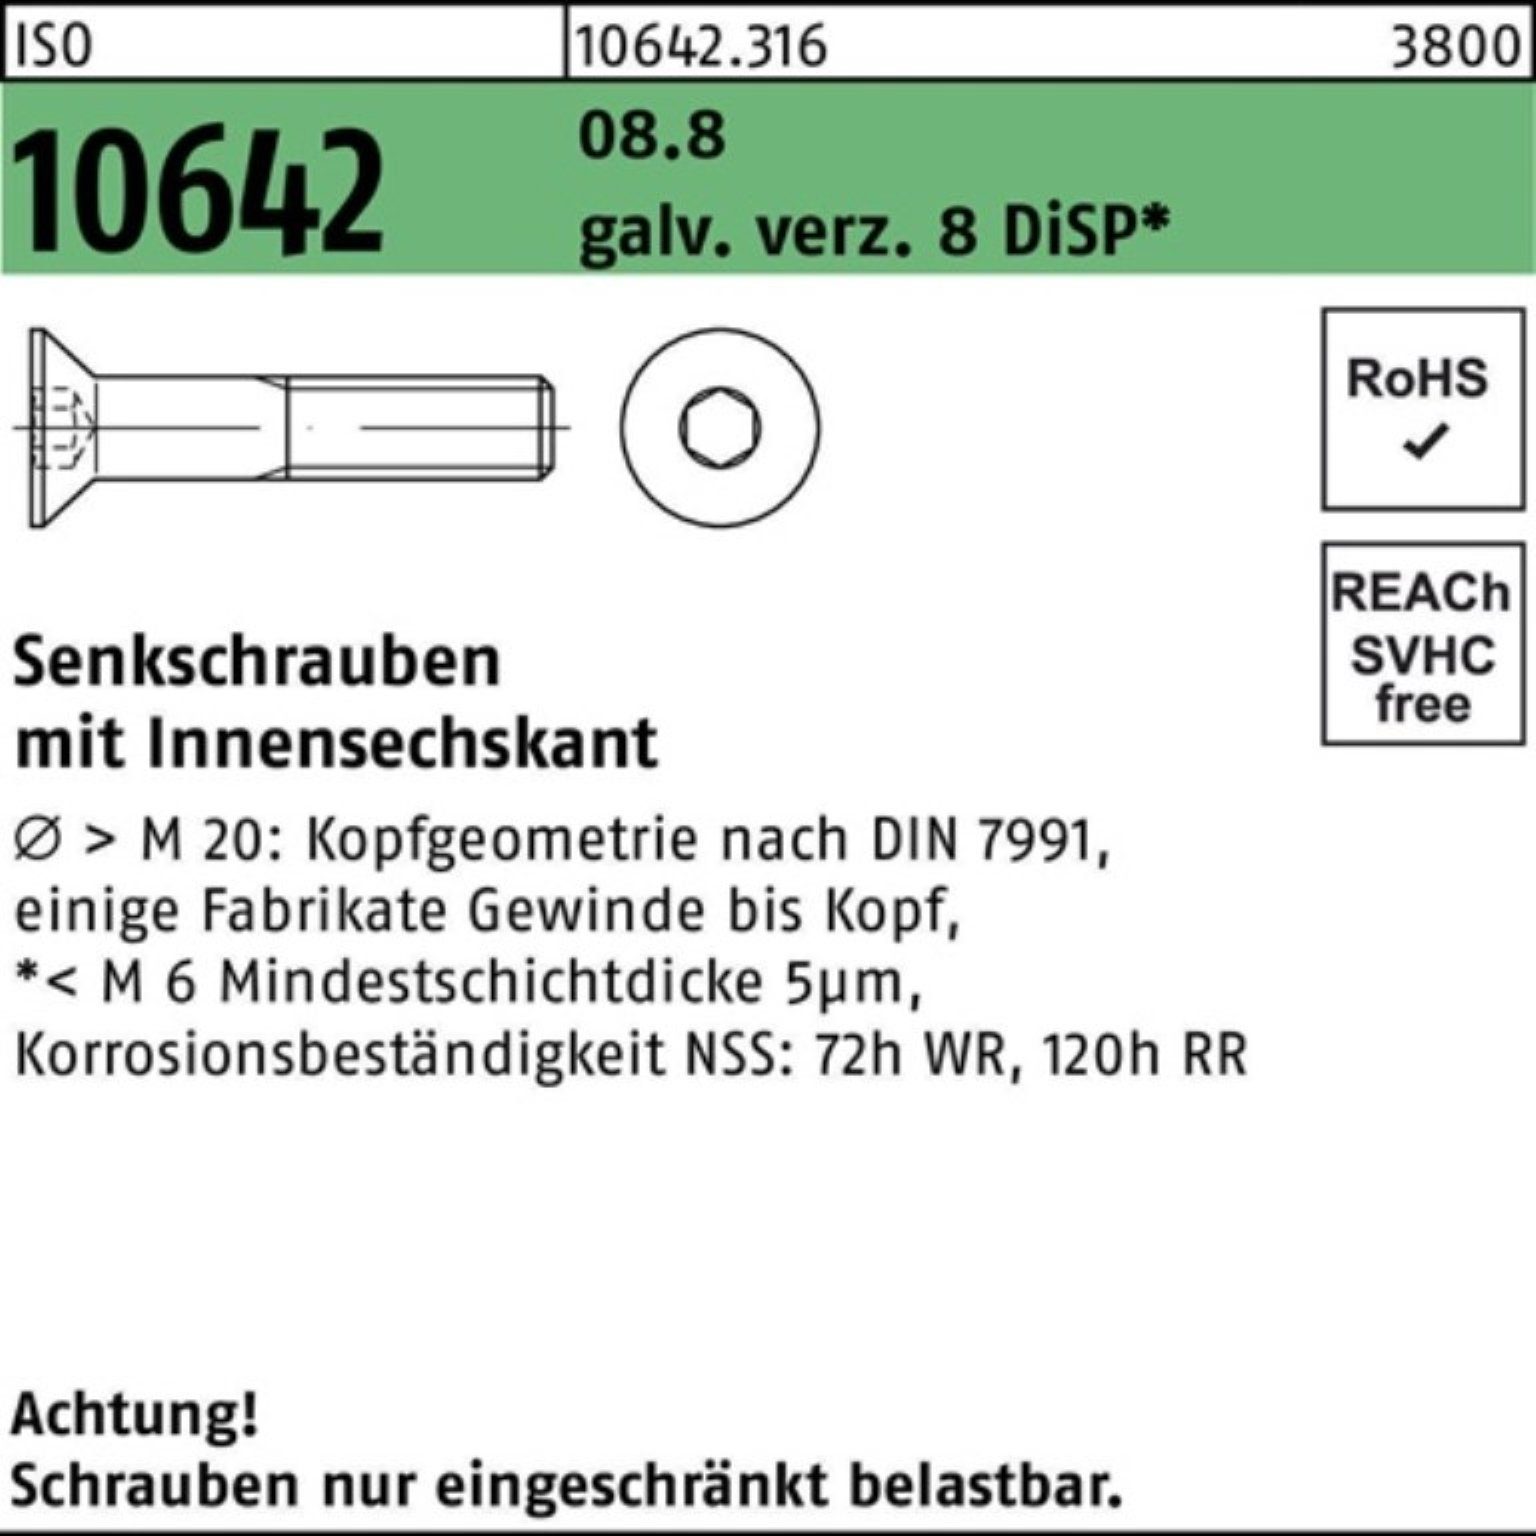 Pack 8 Senkschraube 500er DiS galv.verz. 10642 8.8 ISO Senkschraube Reyher Innen-6kt M5x12